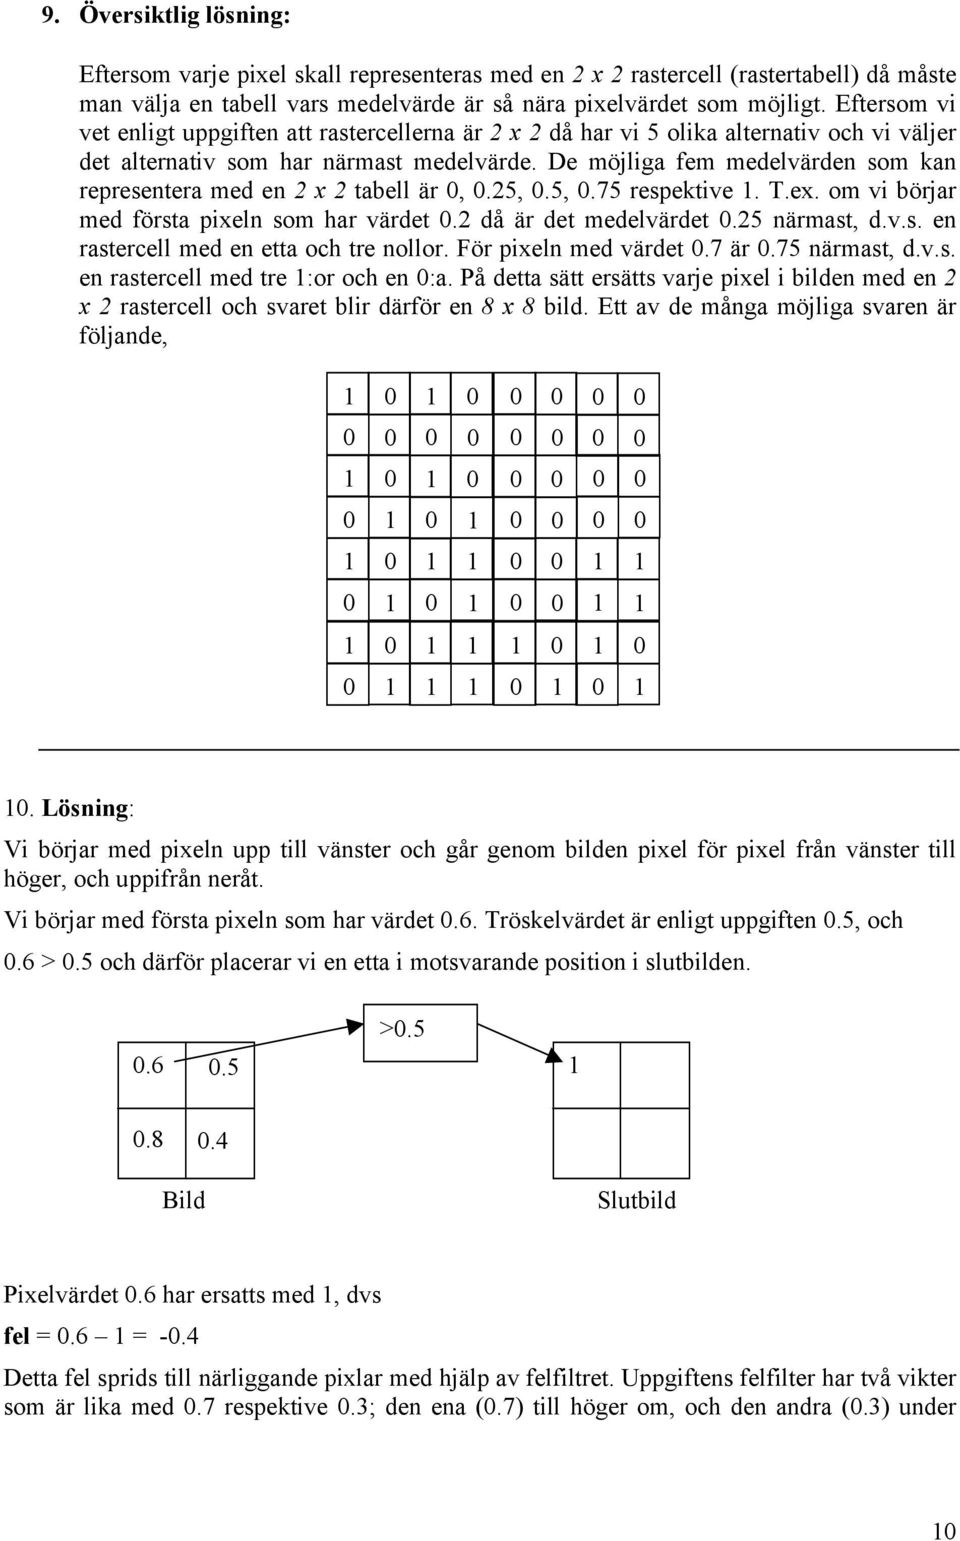 De möjliga fem medelvärden som kan representera med en 2 x 2 tabell är,.25,.5,.75 respektive. T.ex. om vi börjar med första pixeln som har värdet.2 då är det medelvärdet.25 närmast, d.v.s. en rastercell med en etta och tre nollor.